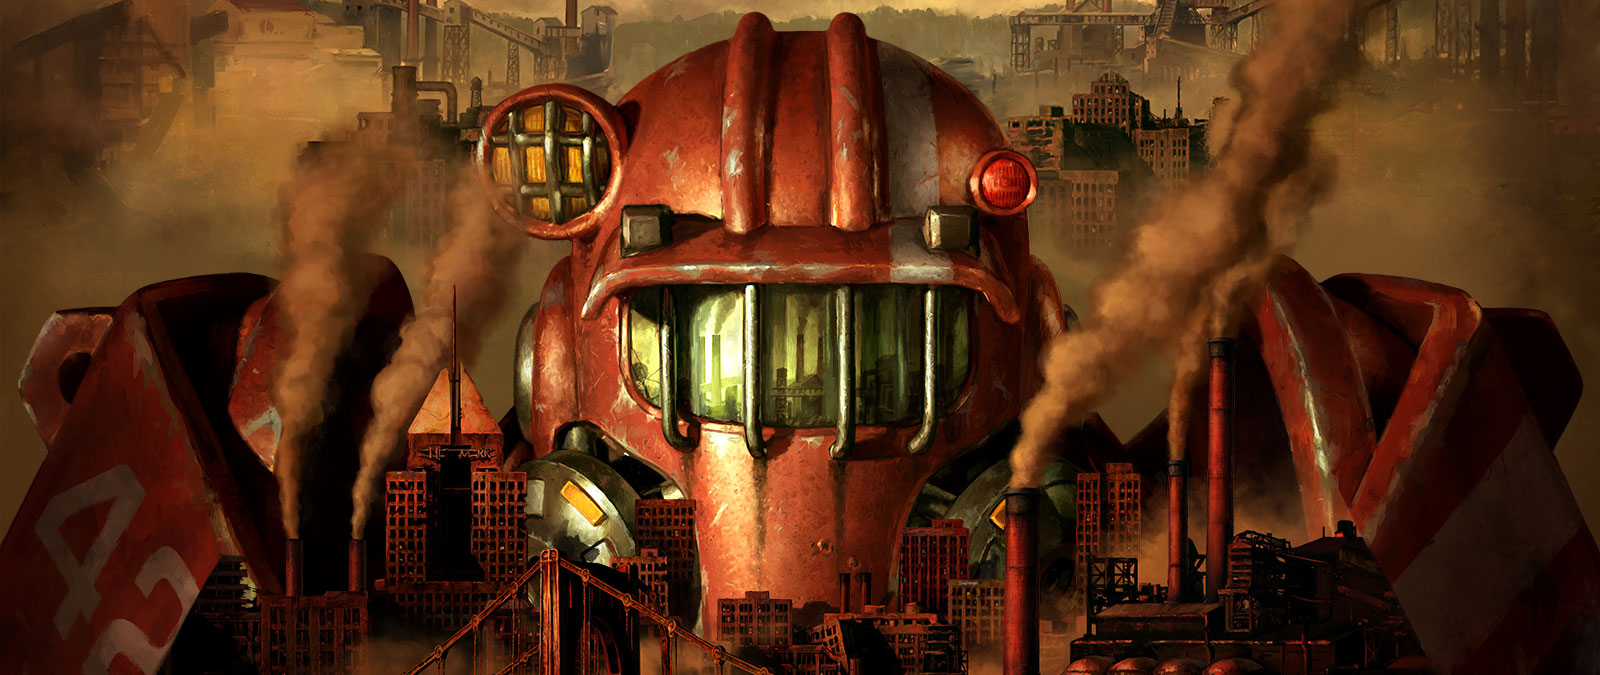 Una figura in armatura atomica incombe minacciosa sullo skyline superinquinato del Pitt.